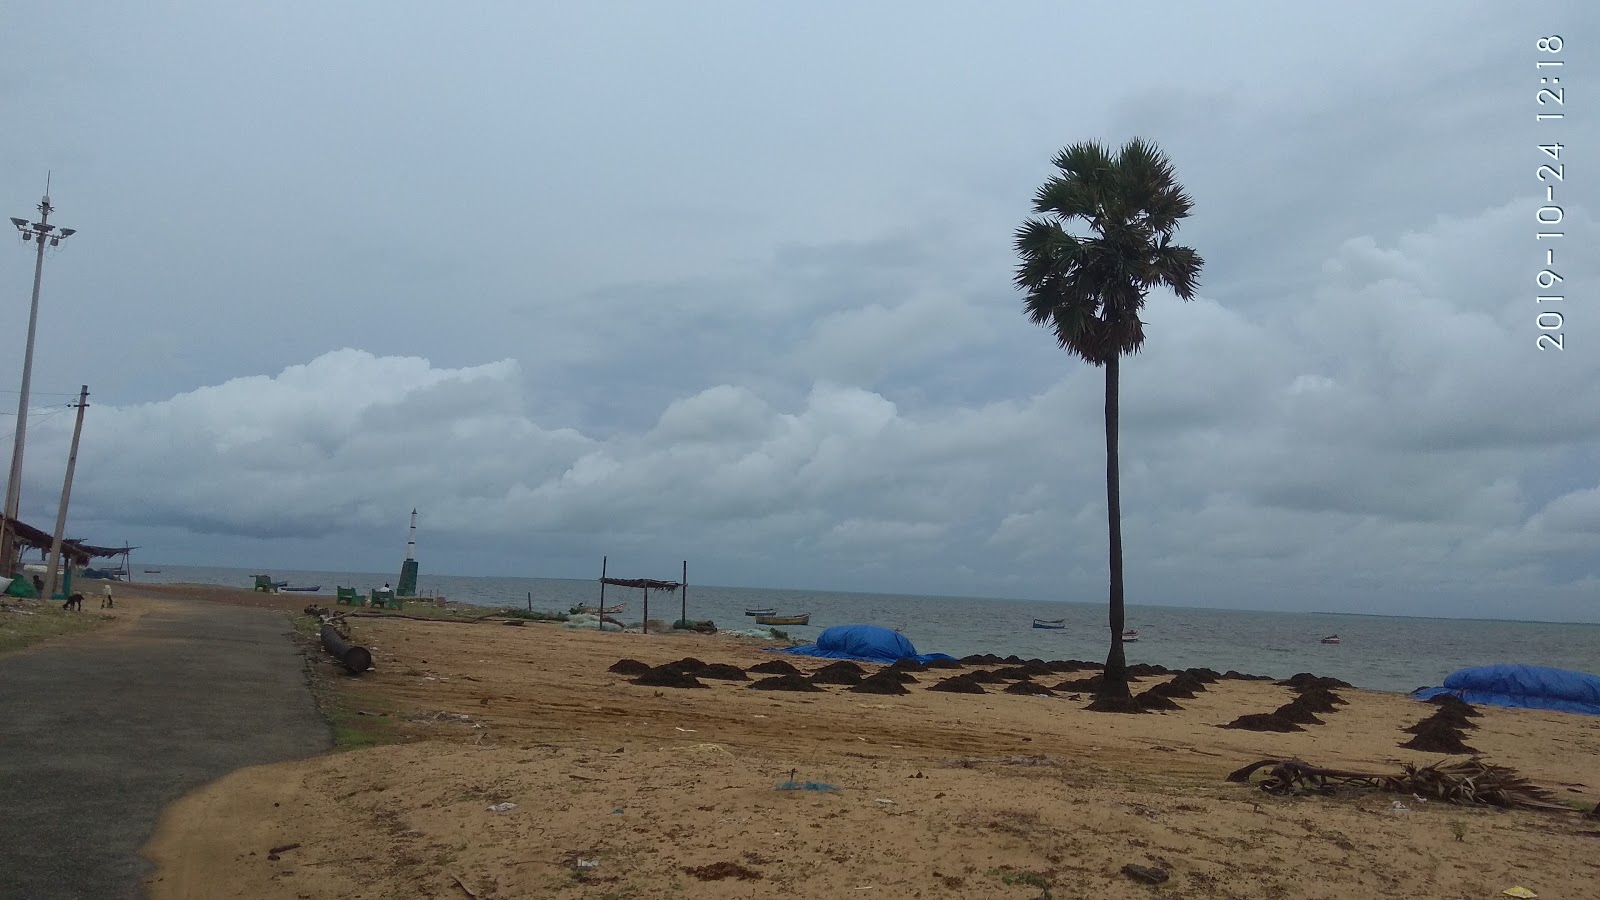 Seeni Appa Dargha Beach'in fotoğrafı - rahatlamayı sevenler arasında popüler bir yer